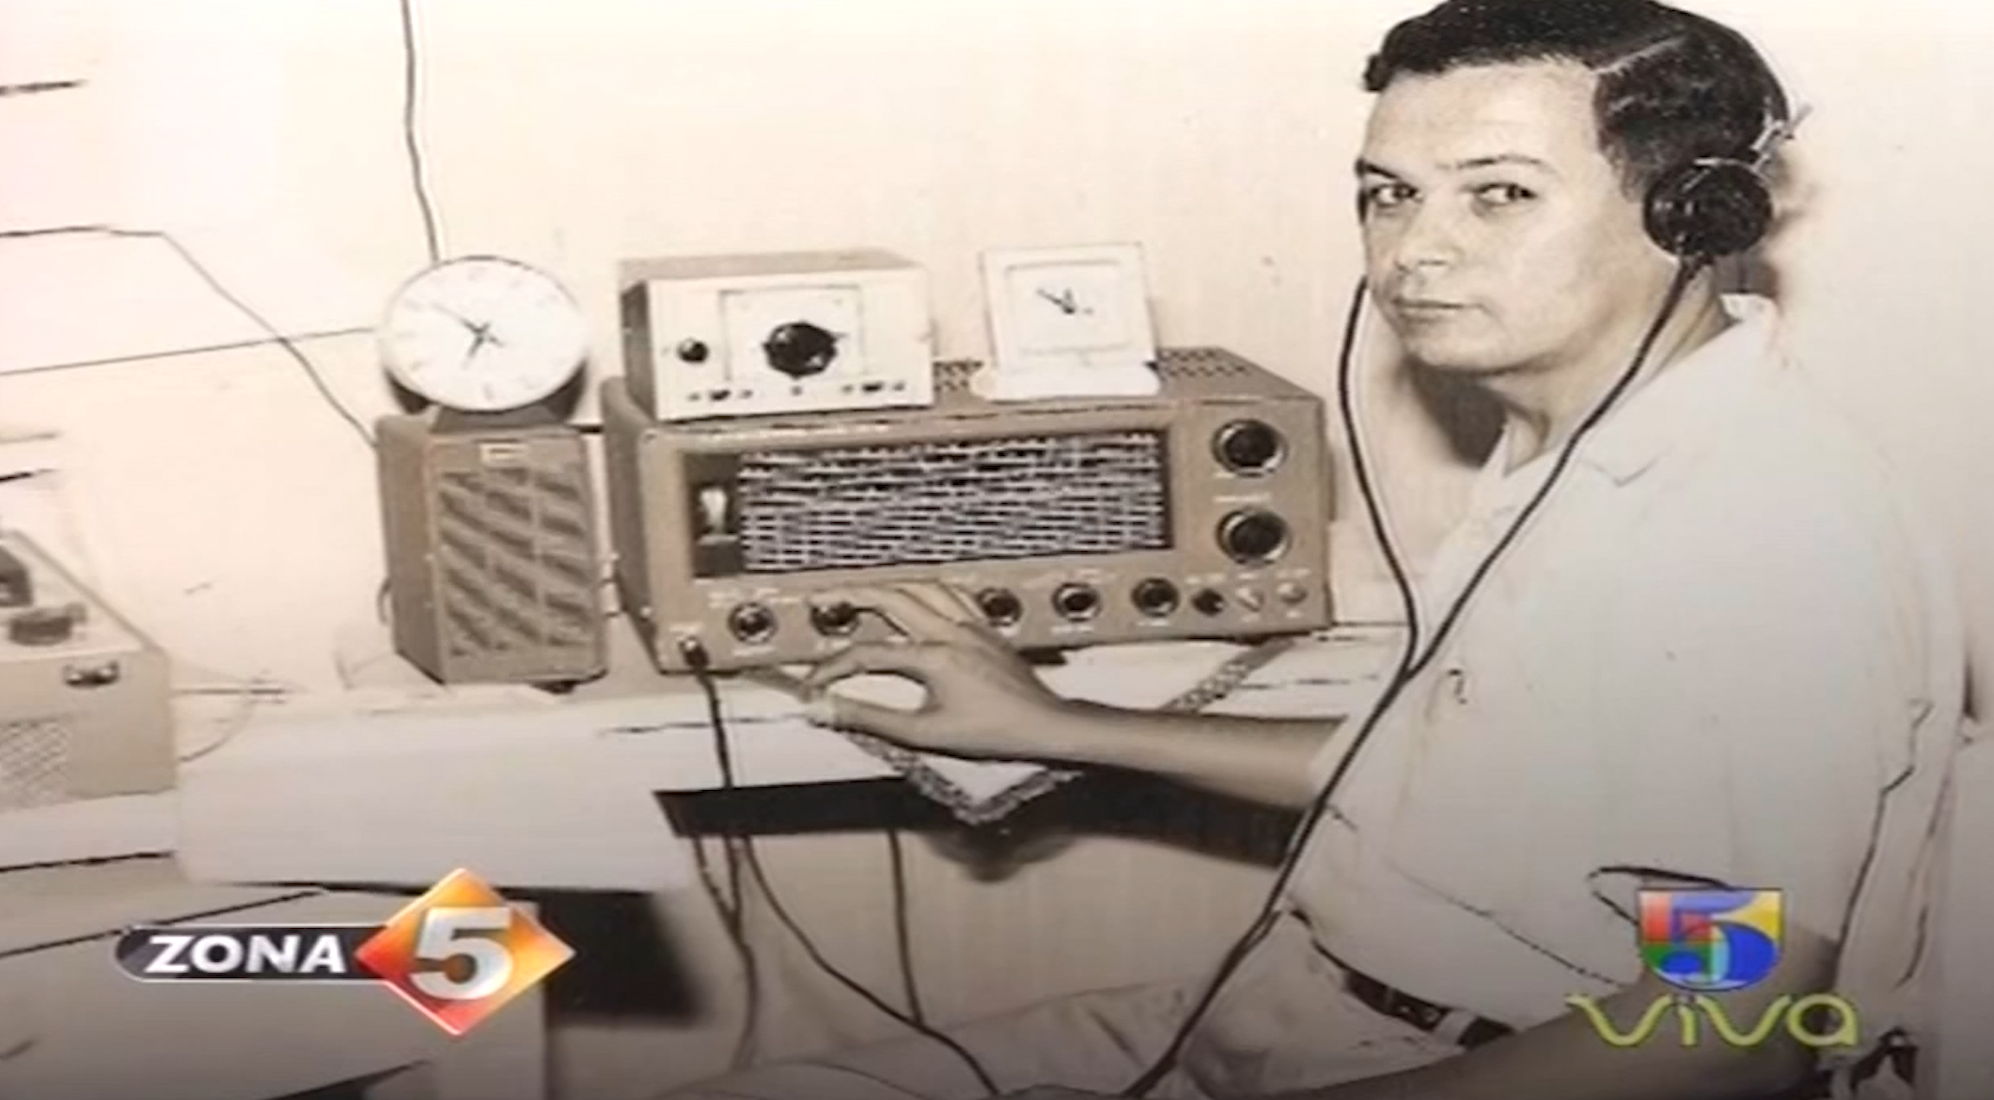 Zona5: La Radio Antigua VS La Radio Moderna En RD